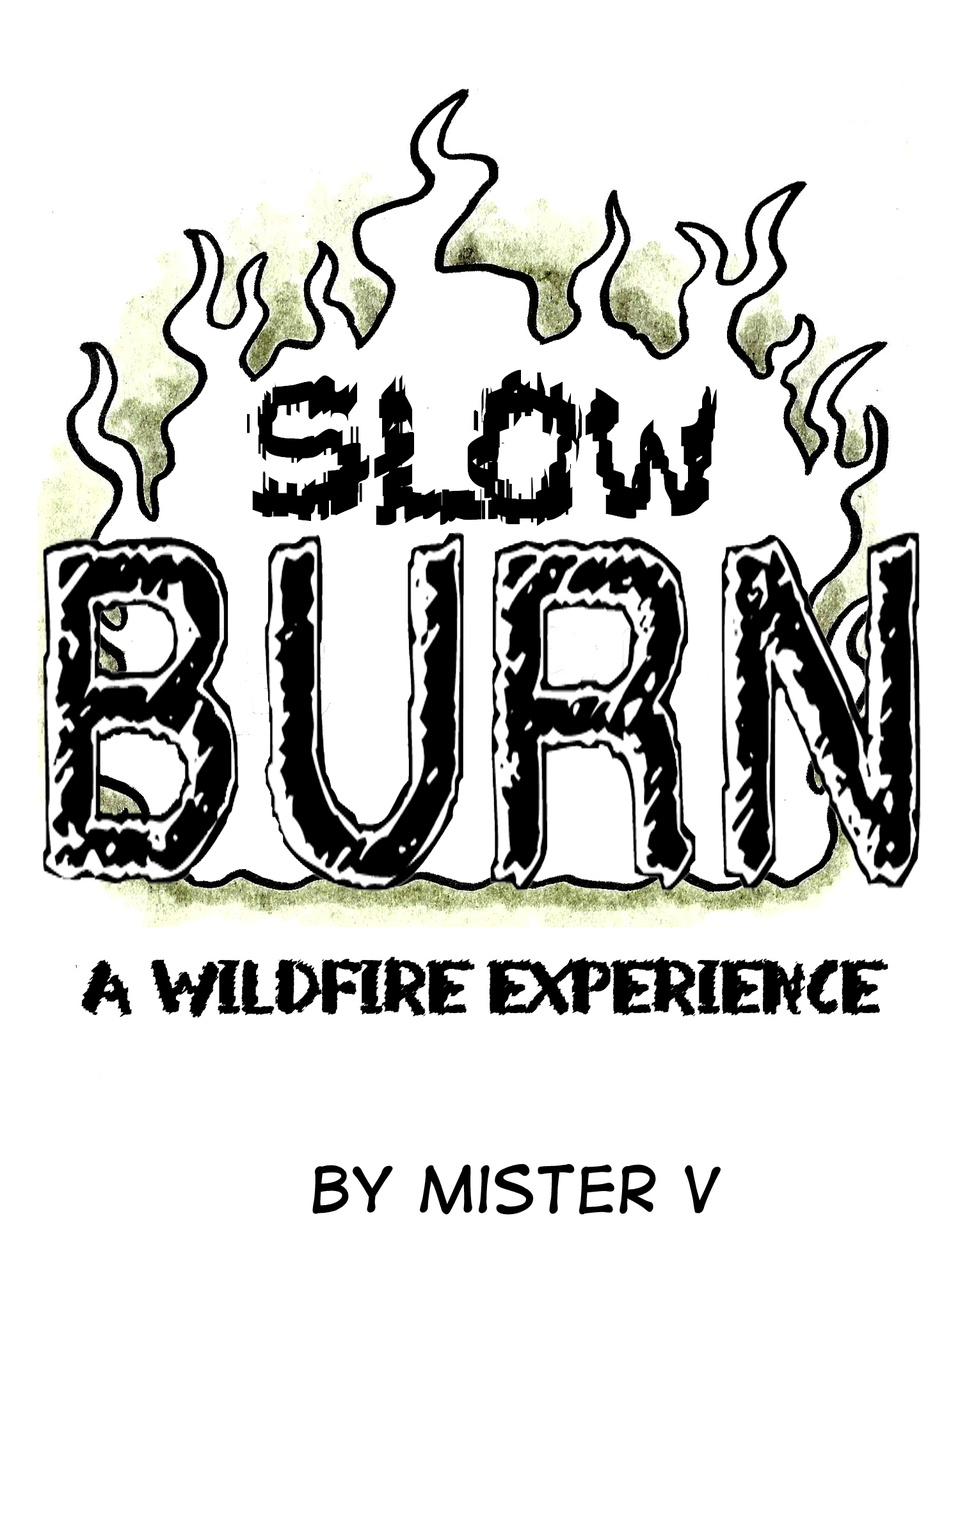 Slow Burn 1